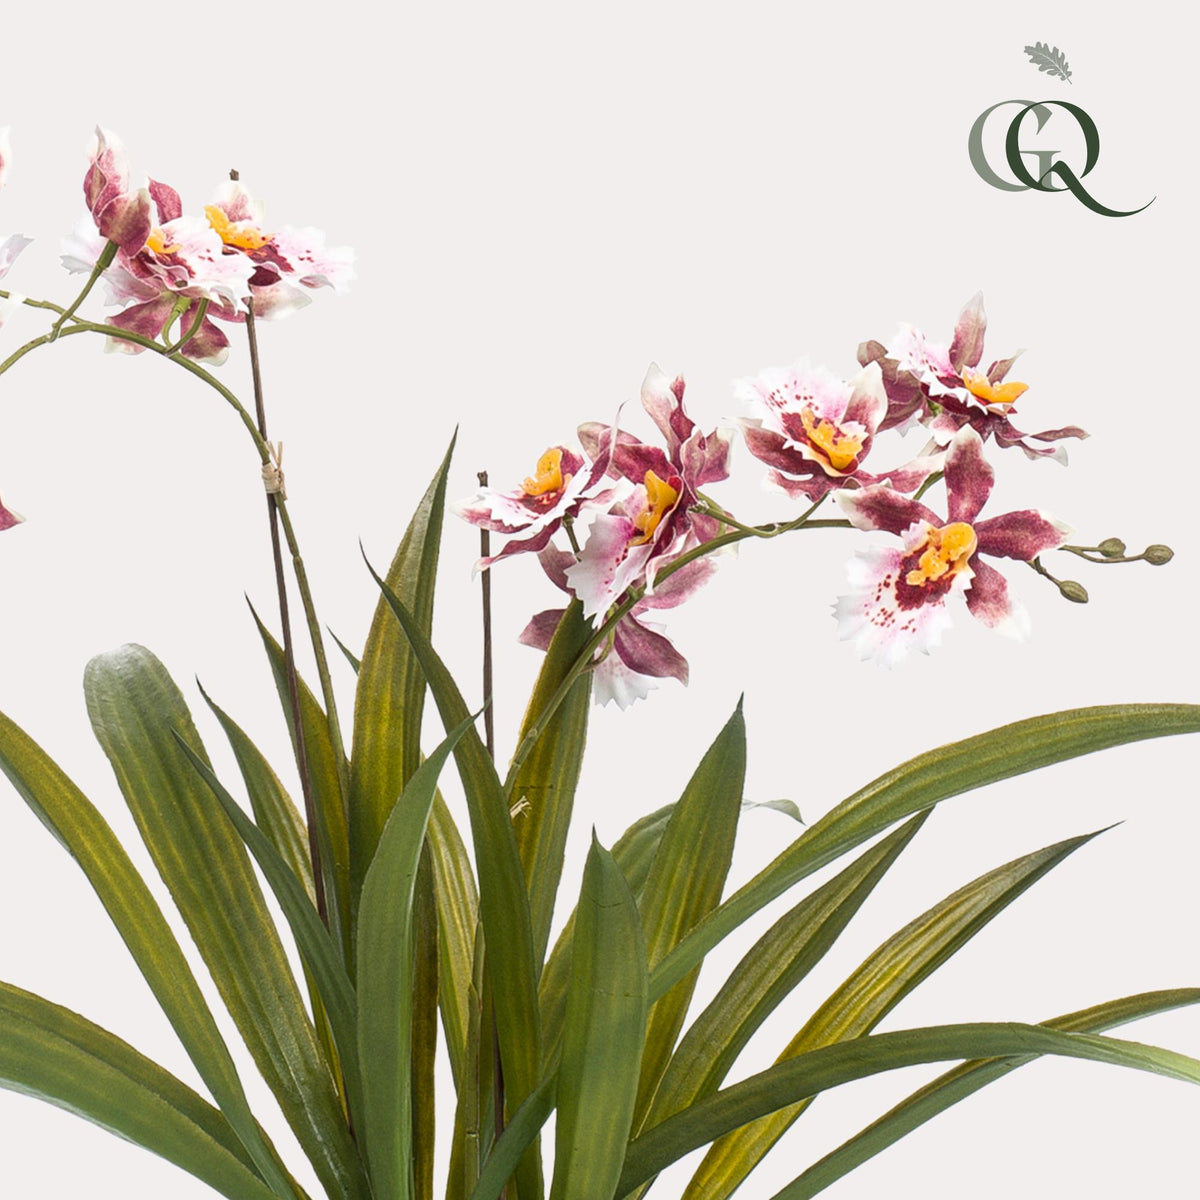 Kunstplant - Orchidee - Bordeaux - 45cm